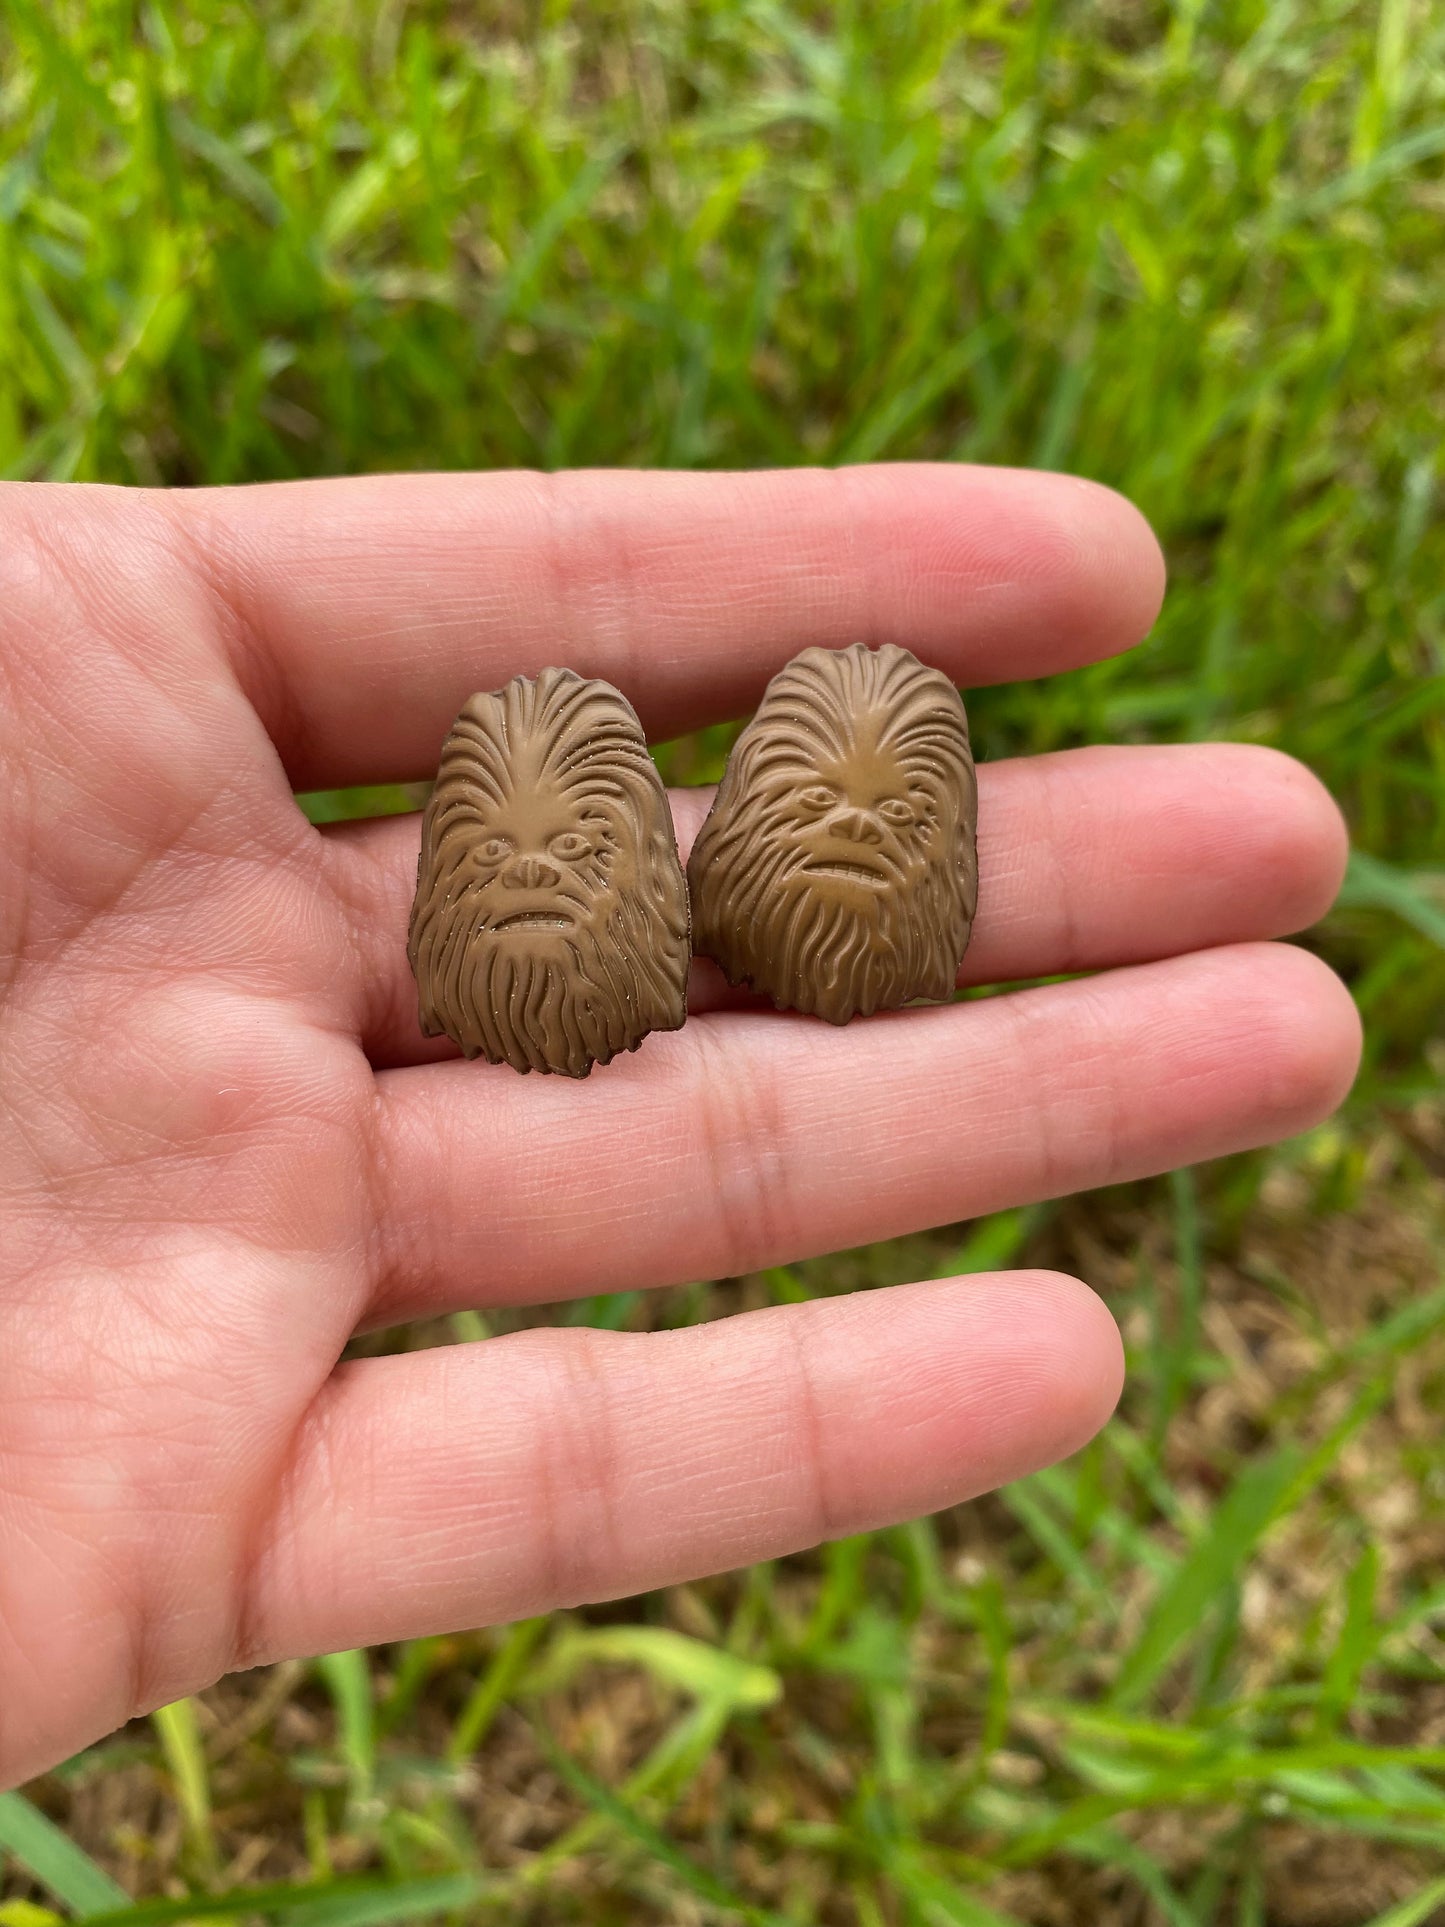 Chewbacca Star Wars Stud Earrings Gift